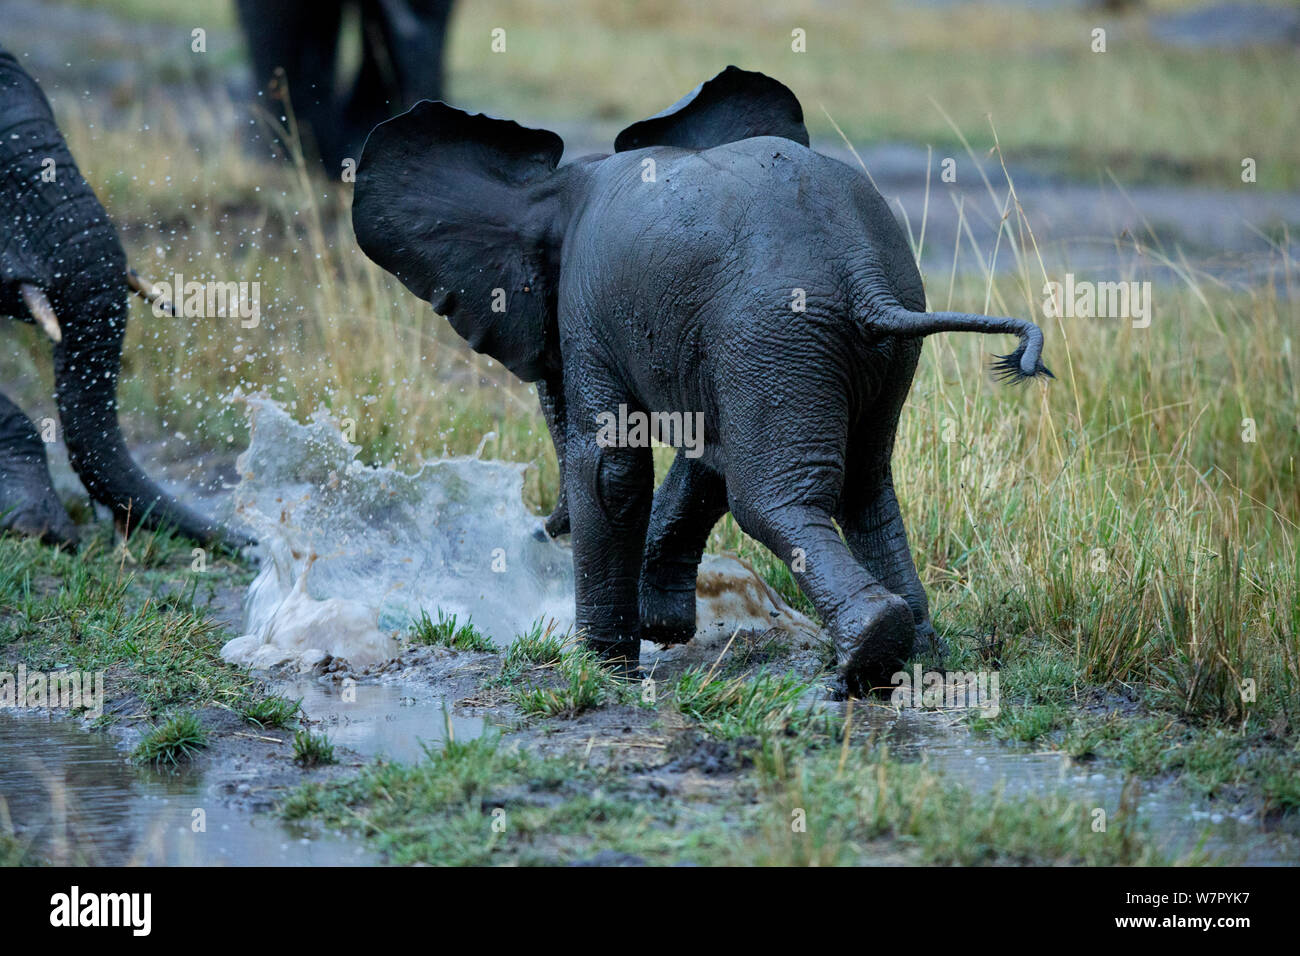 Elefante africano (Loxodonta africana), joven jugando en el agua. Masai Mara, Kenya, Africa, Agosto. Foto de stock